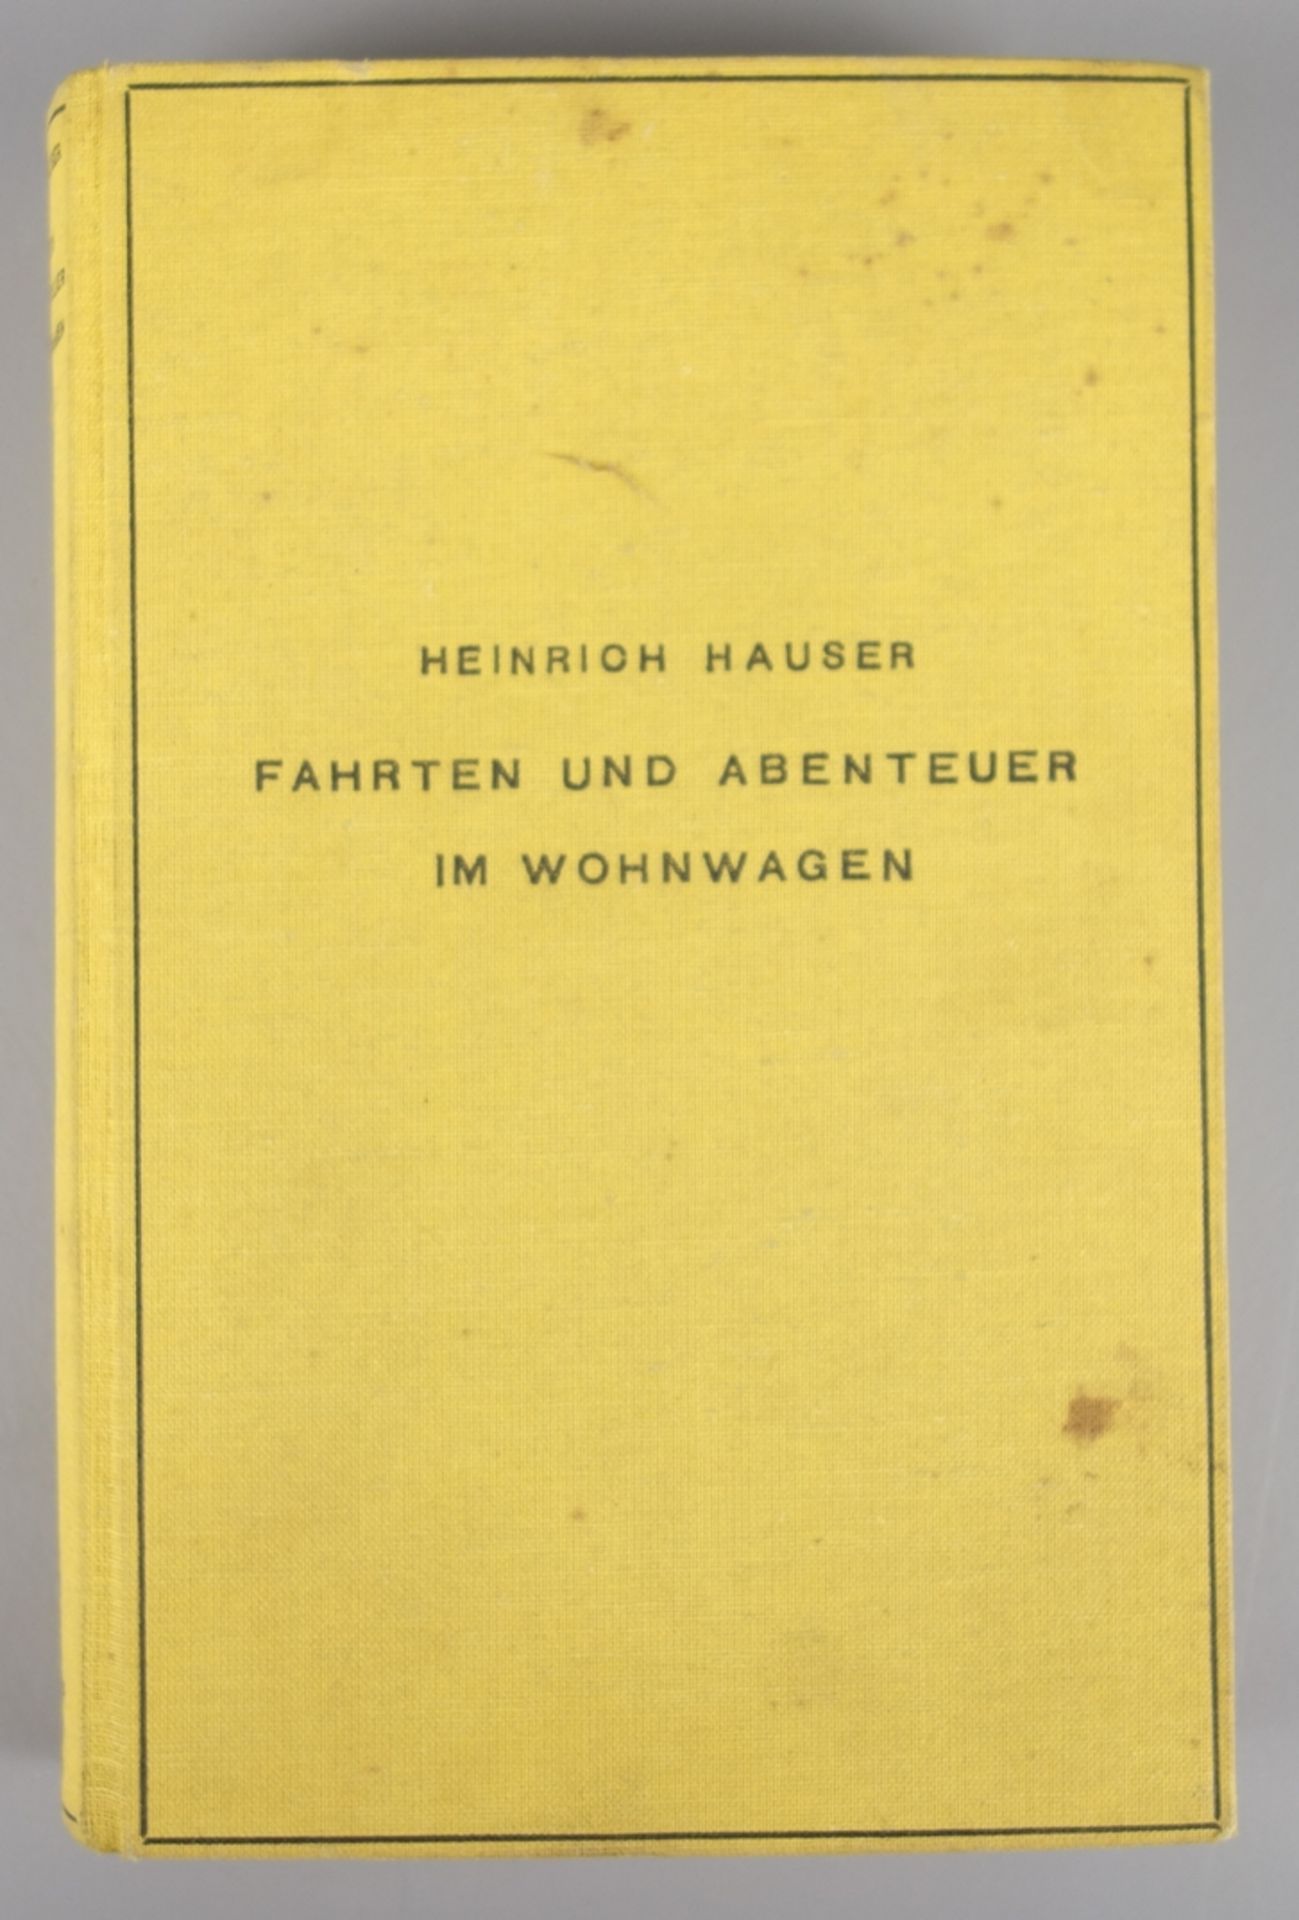 Fahrten und Abenteuer im Wohnwagen, Heinrich Hauser, 1935